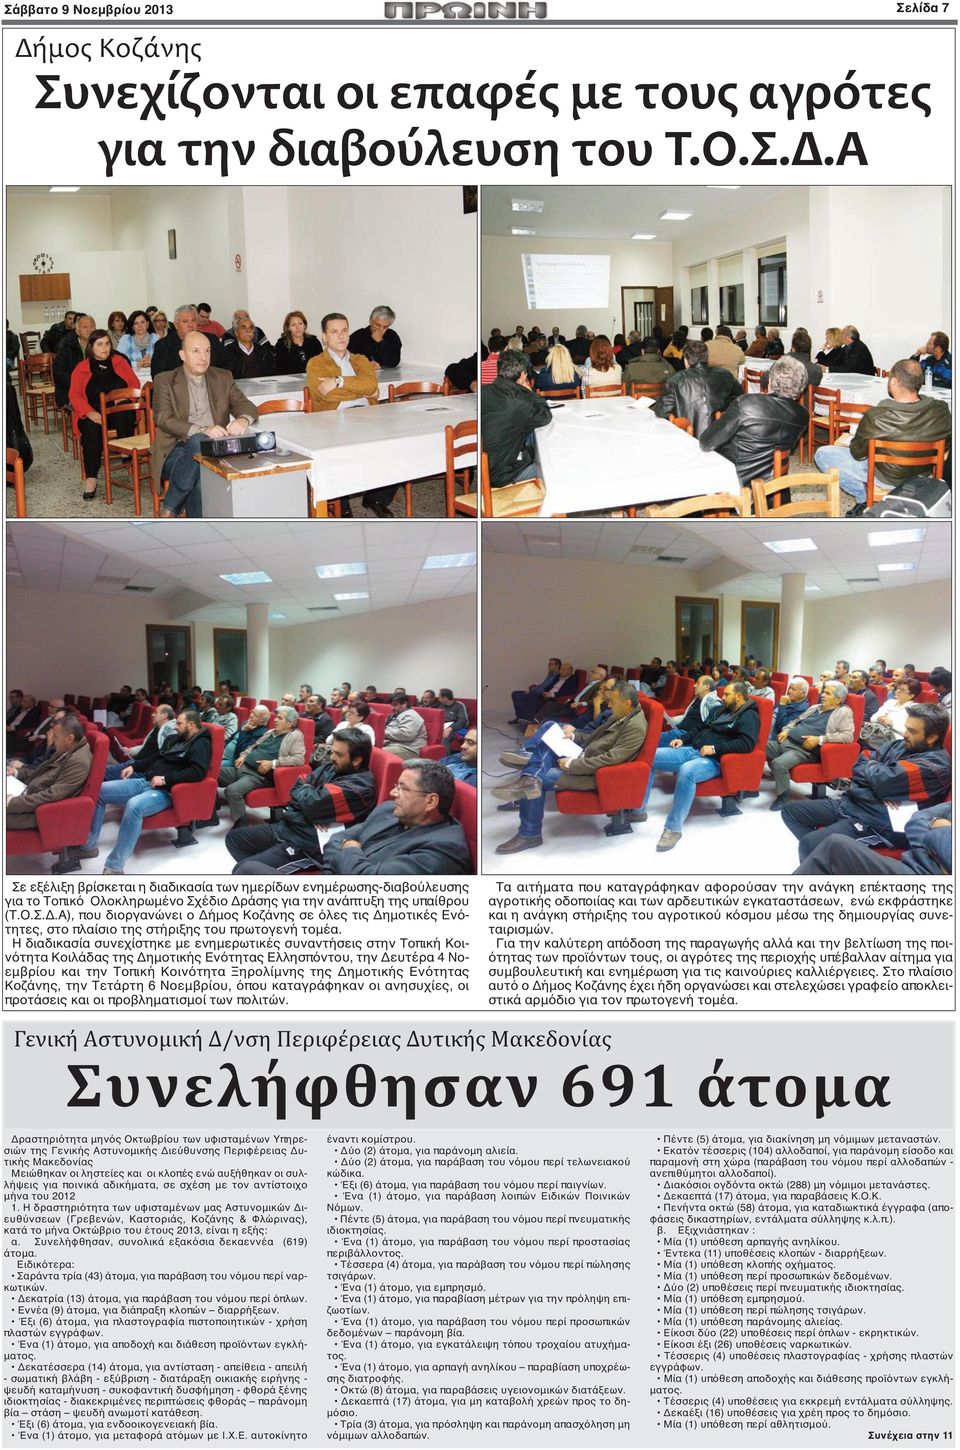 Η διαδικασία συνεχίστηκε με ενημερωτικές συναντήσεις στην Τοπική Κοινότητα Κοιλάδας της Δημοτικής Ενότητας Ελλησπόντου, την Δευτέρα 4 Νοεμβρίου και την Τοπική Κοινότητα Ξηρολίμνης της Δημοτικής